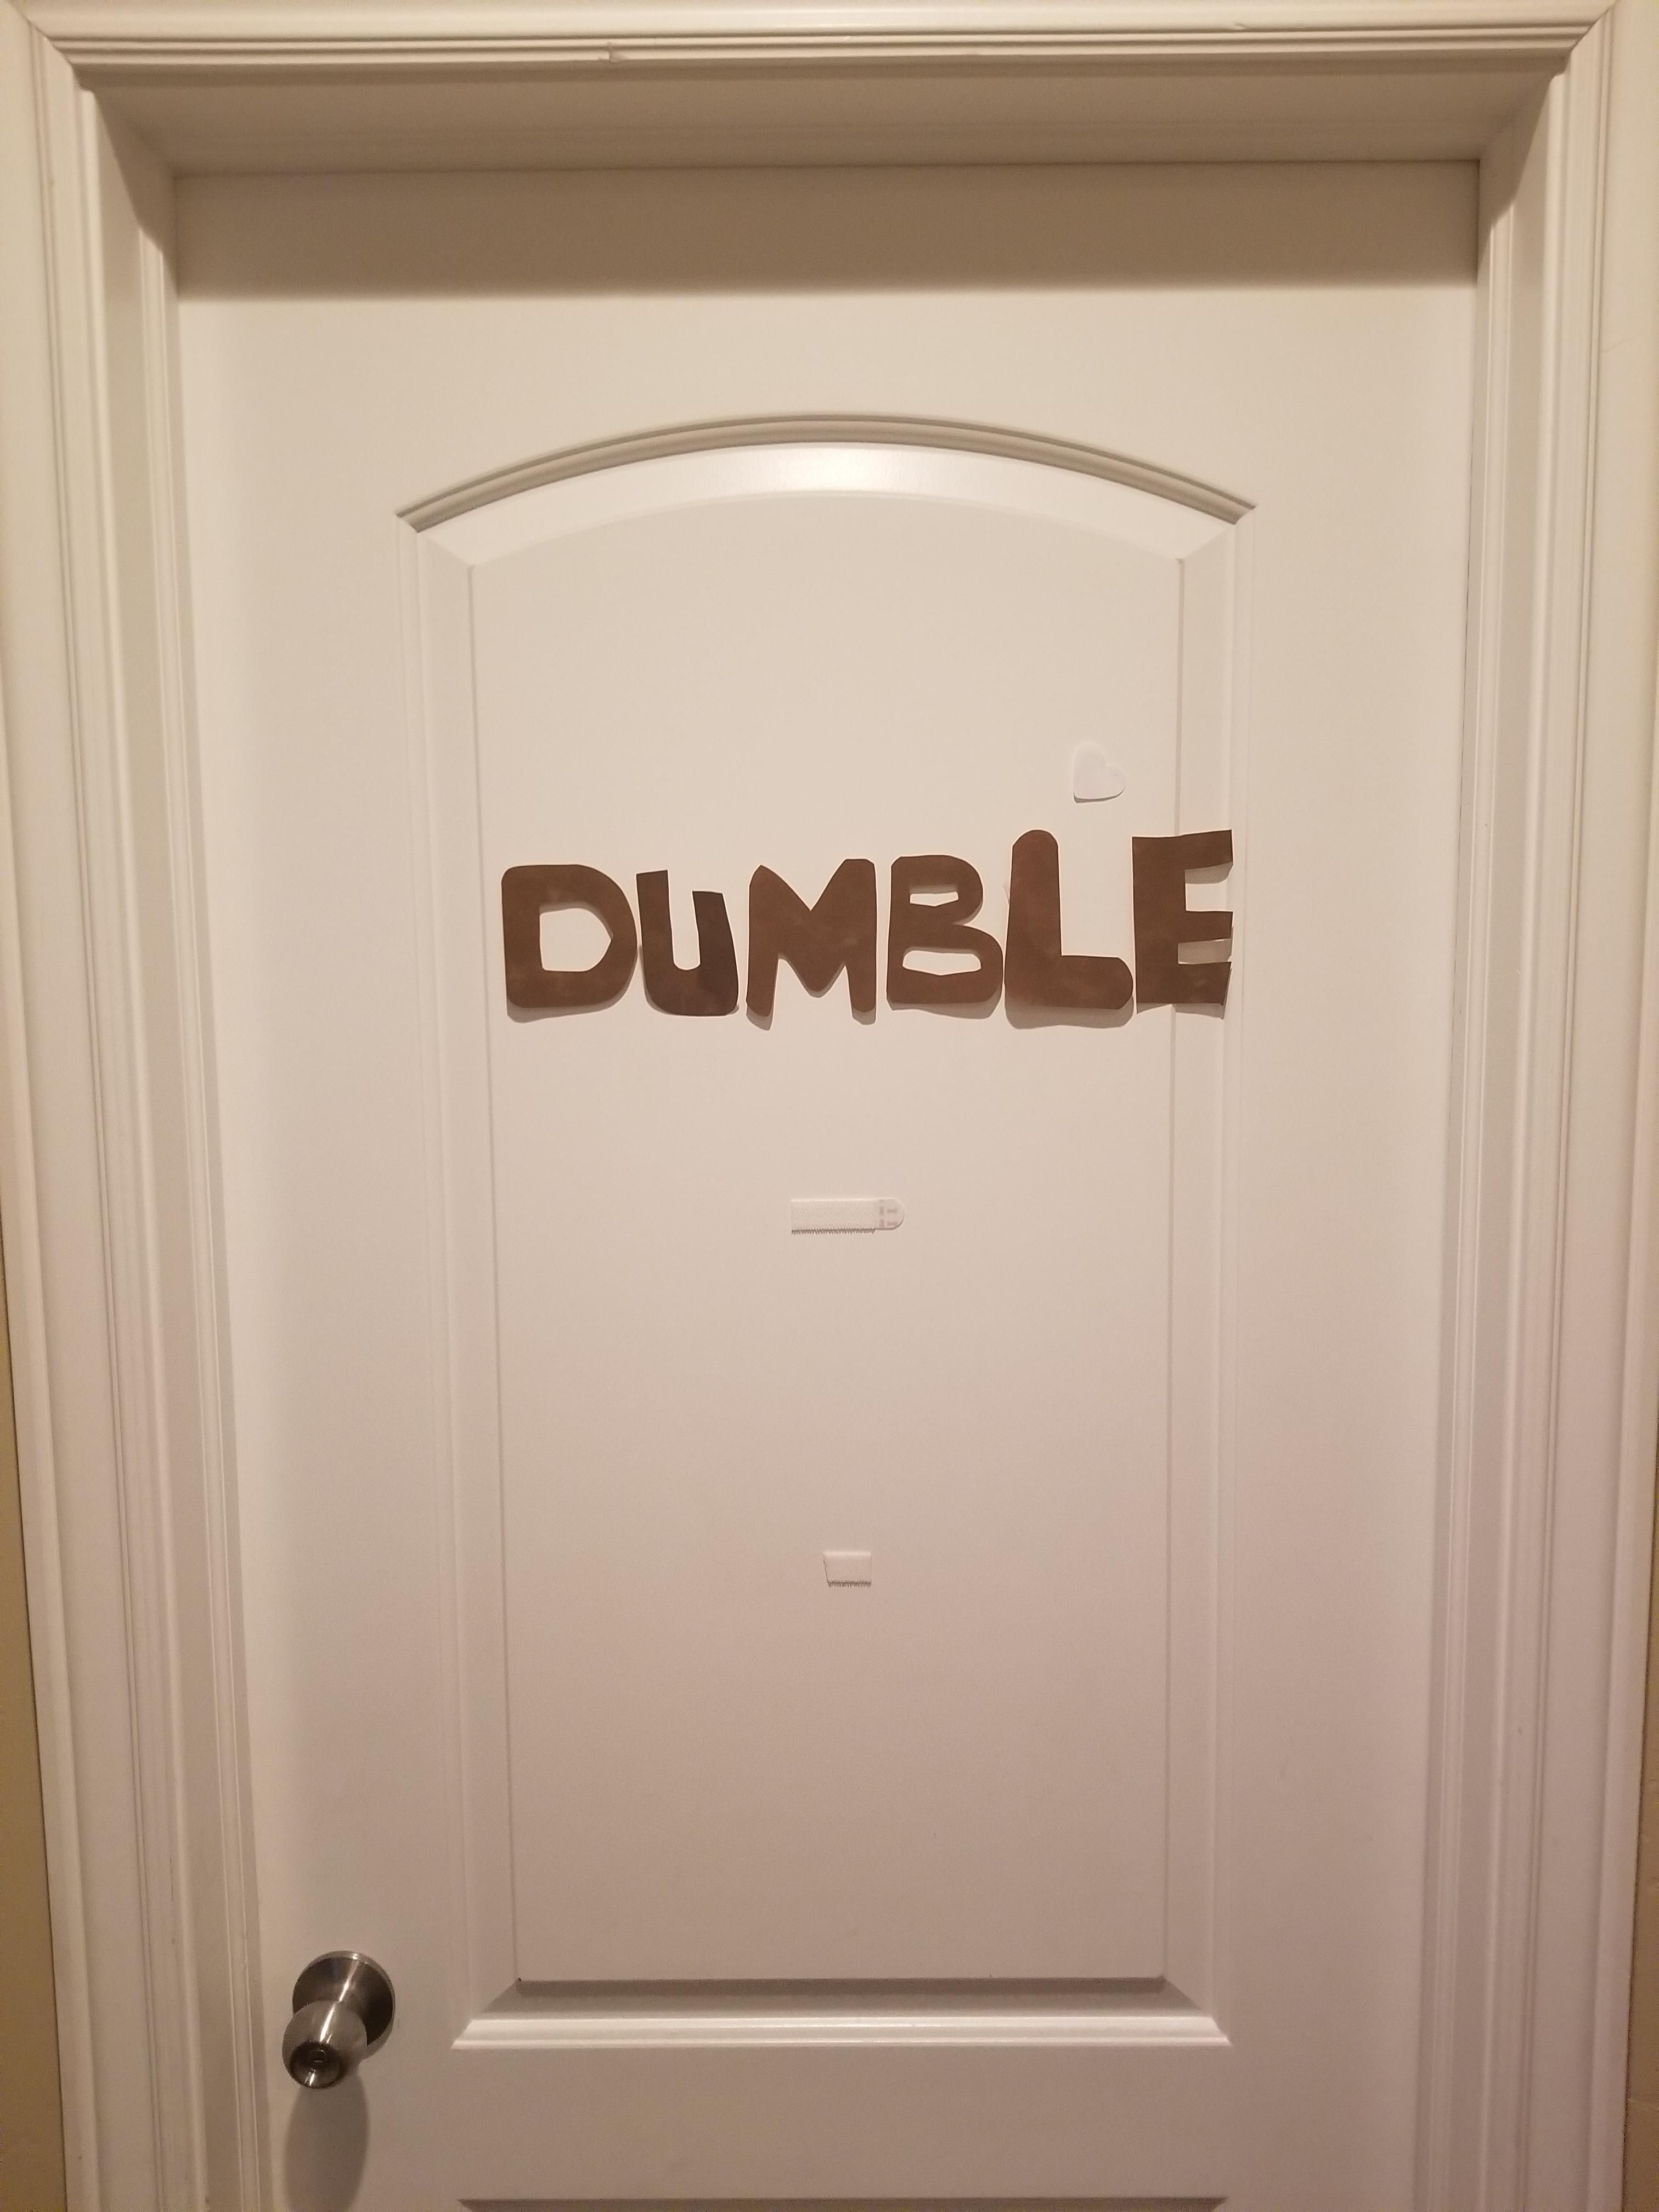 My niece's door, kid cracks me up.